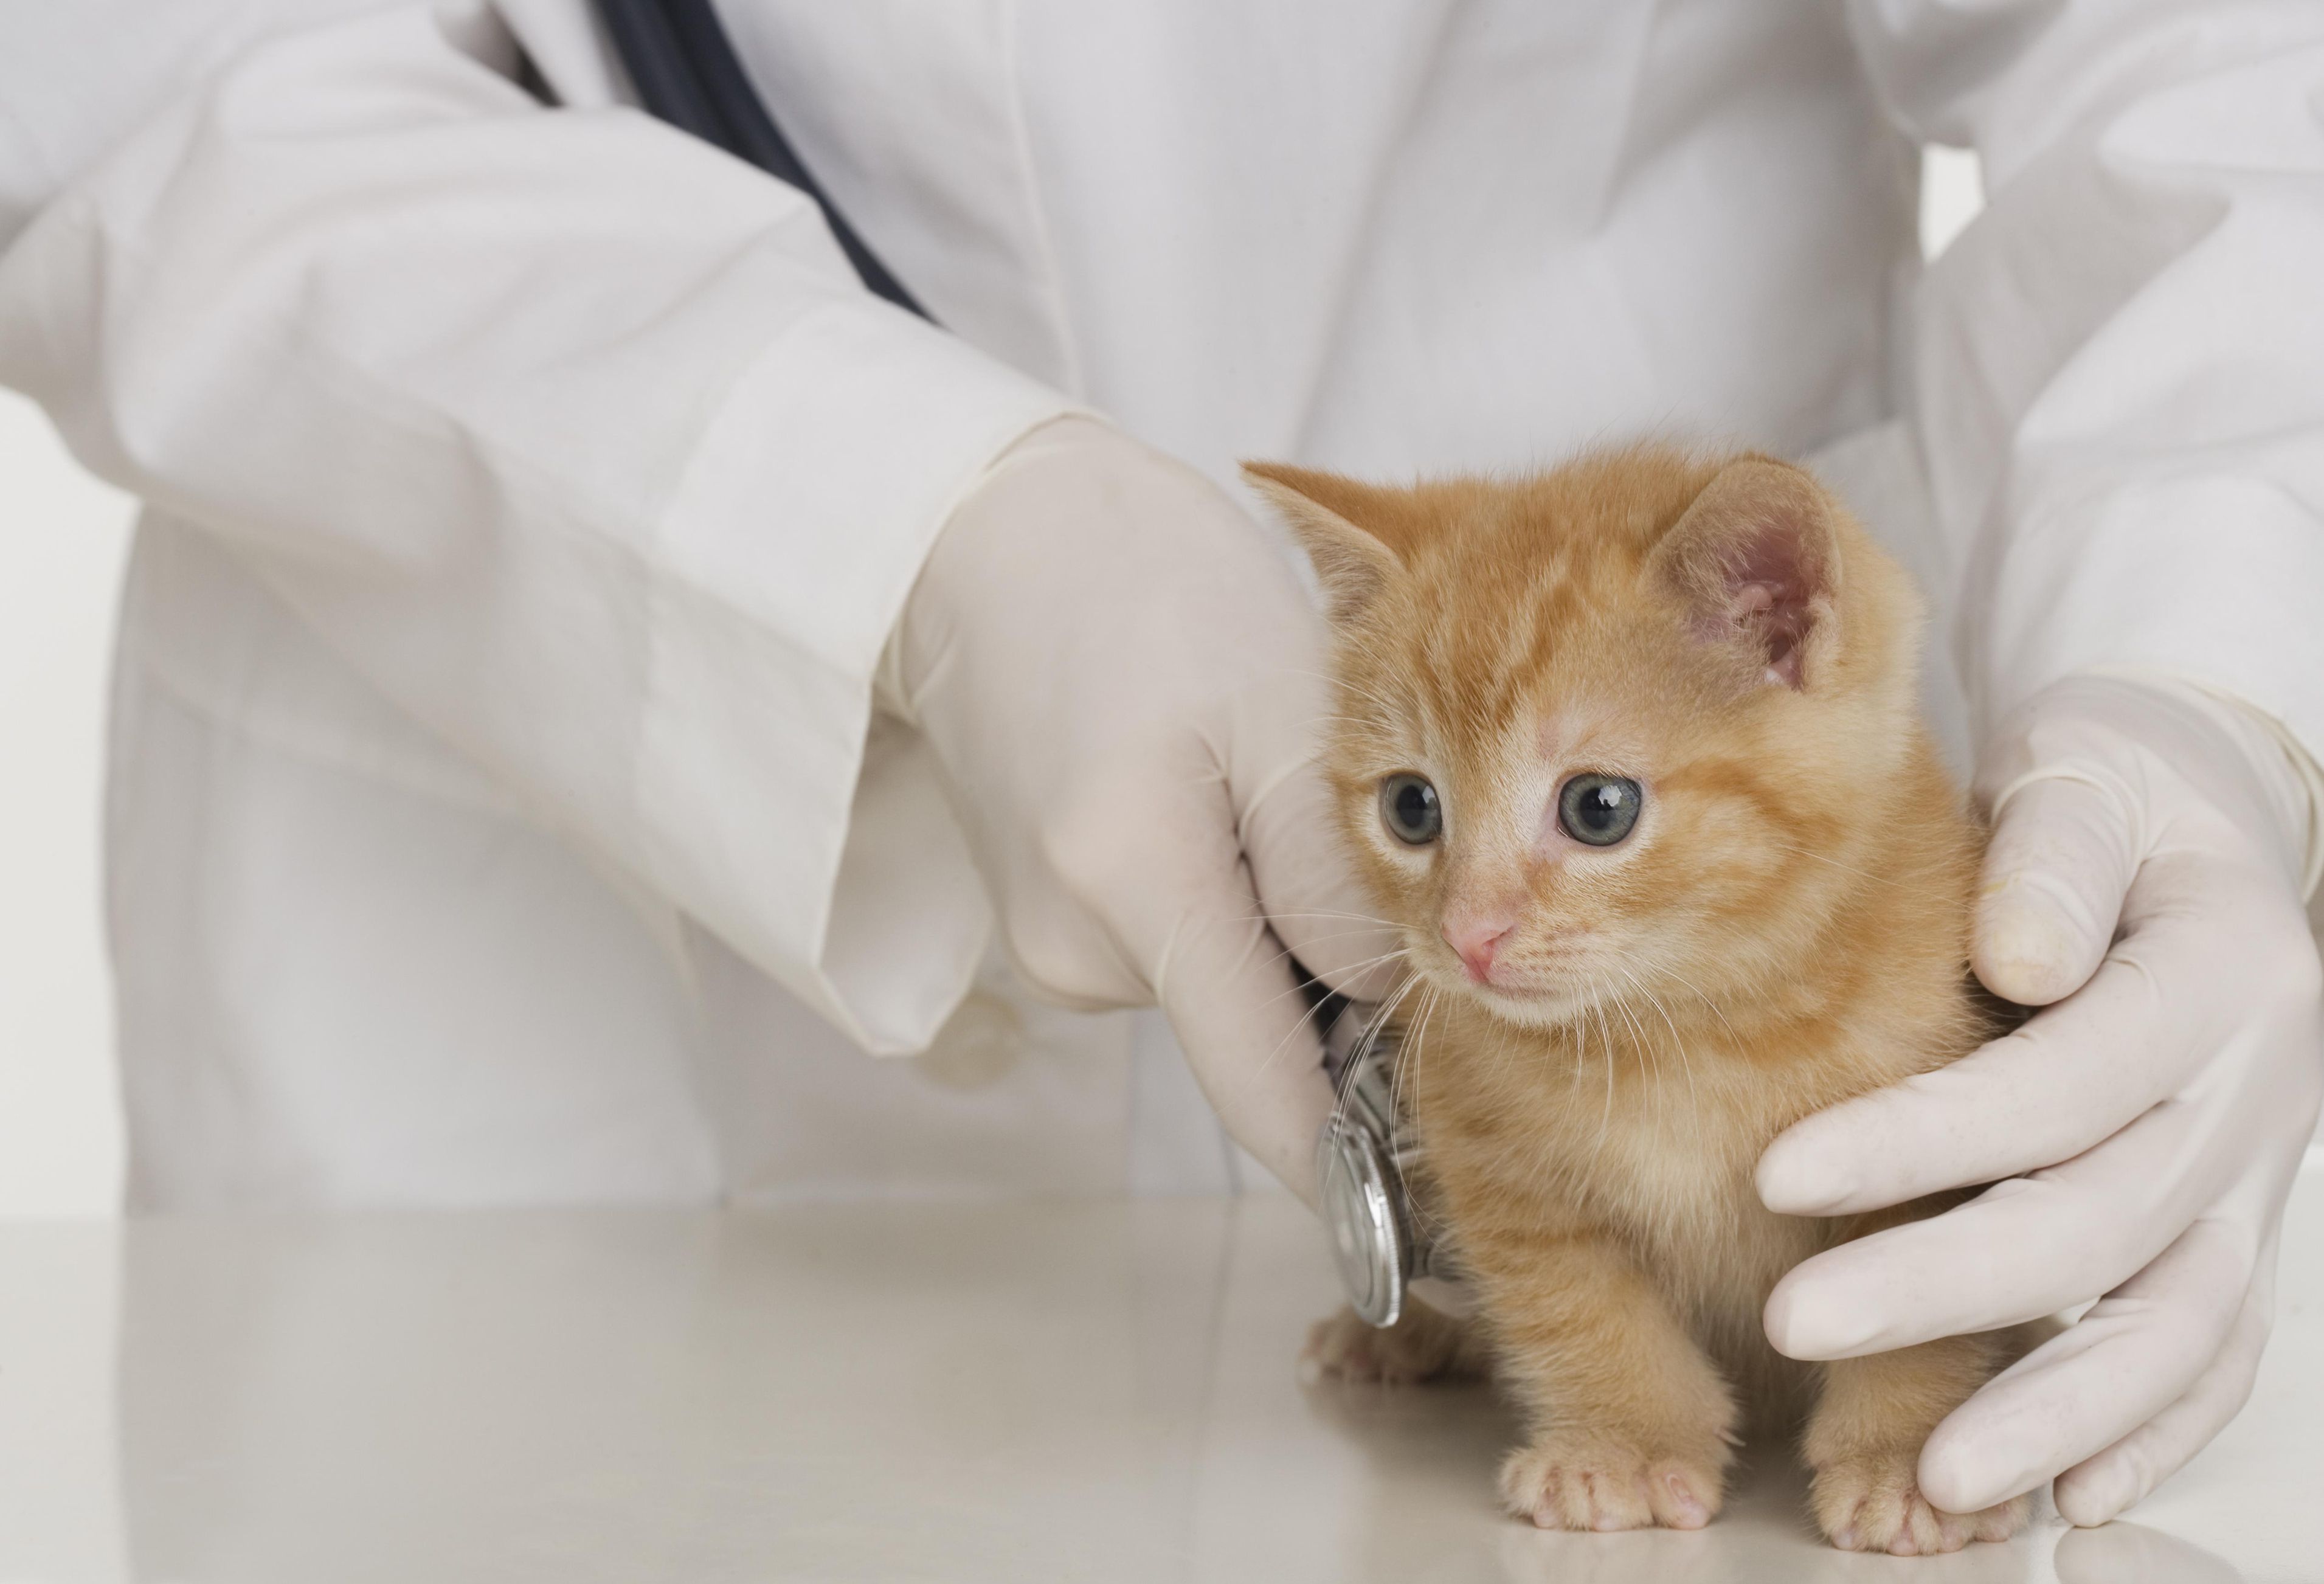 Рахит у кошек: симптомы и лечение